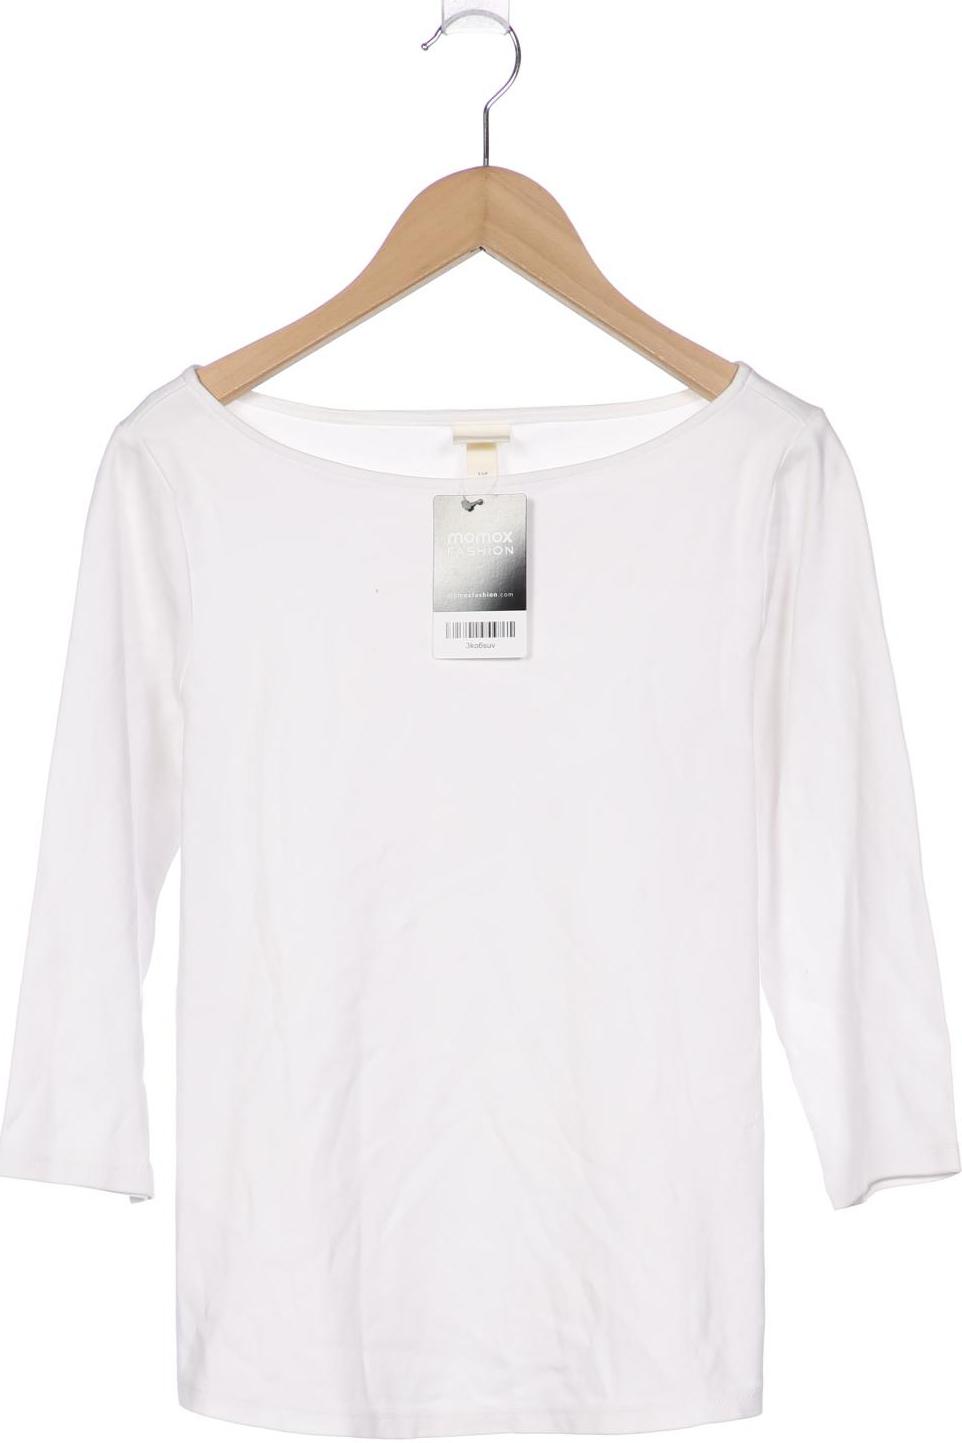 H&M Damen T-Shirt, weiß von H&M